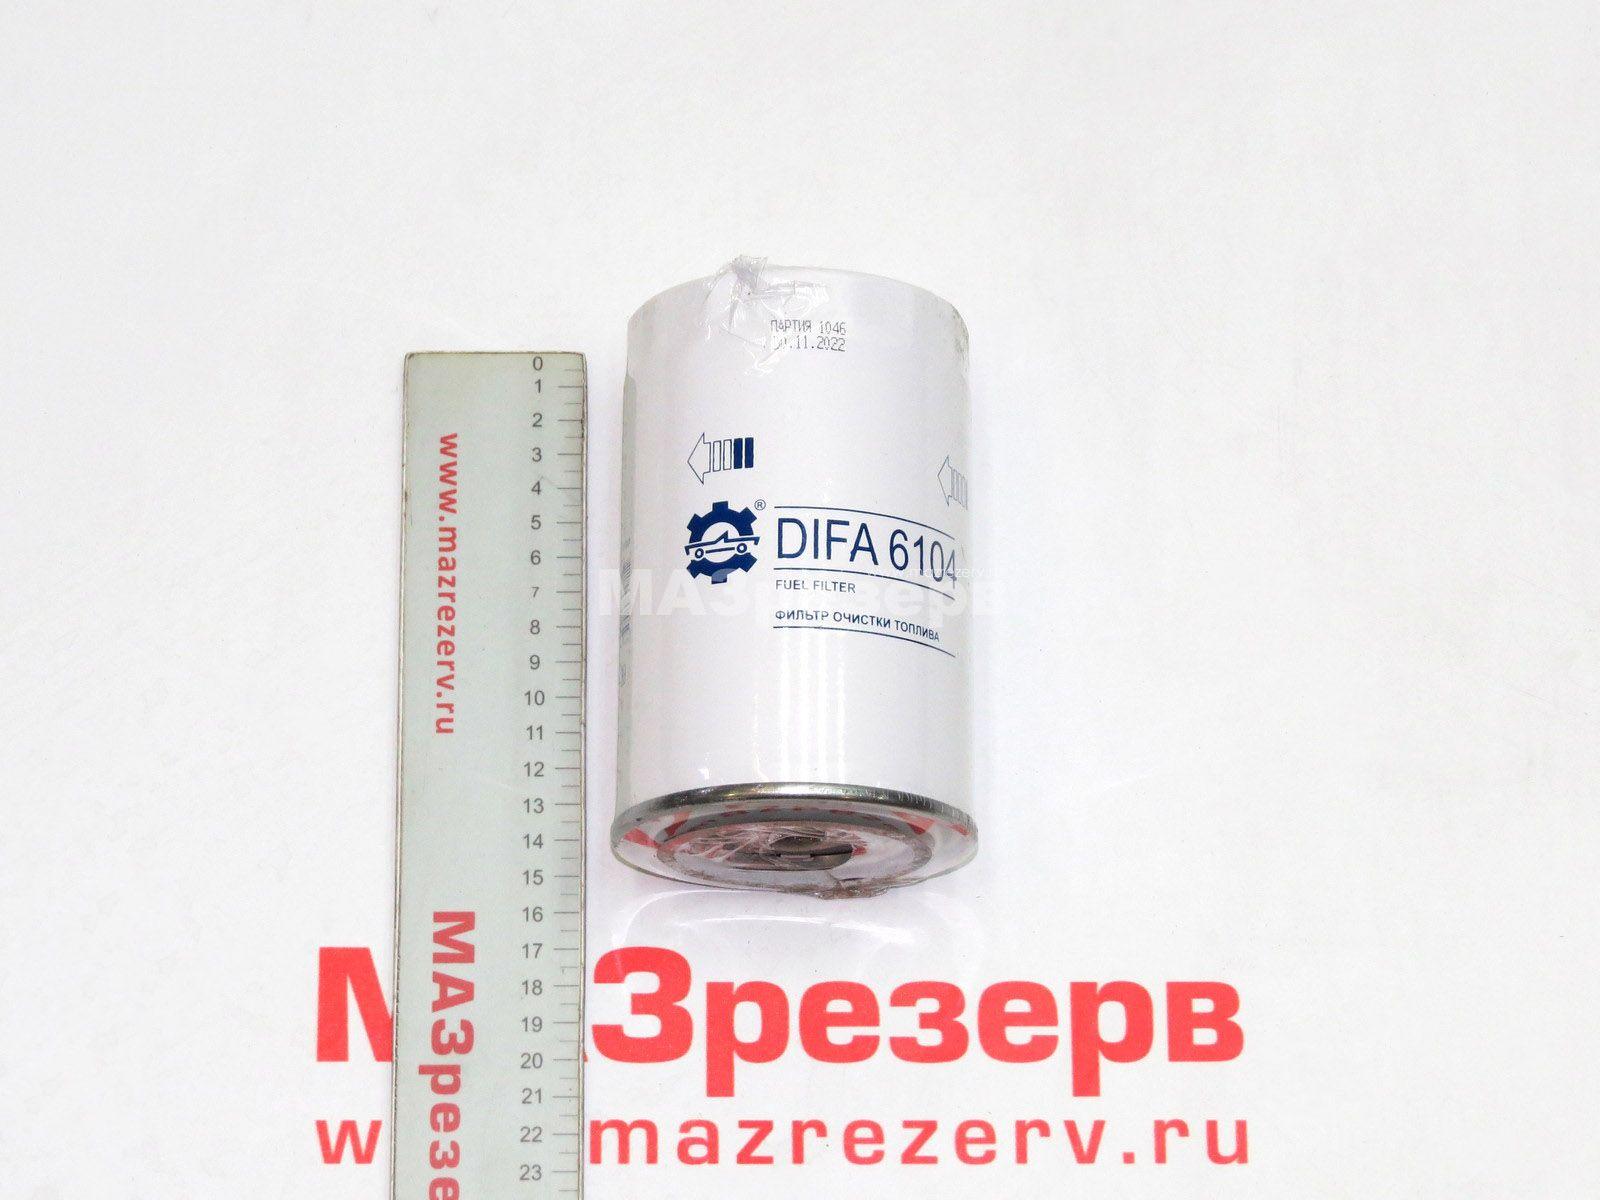 Фильтр топливный ЯМЗ-536 (СОАО "ДИФА") DIFA 6104